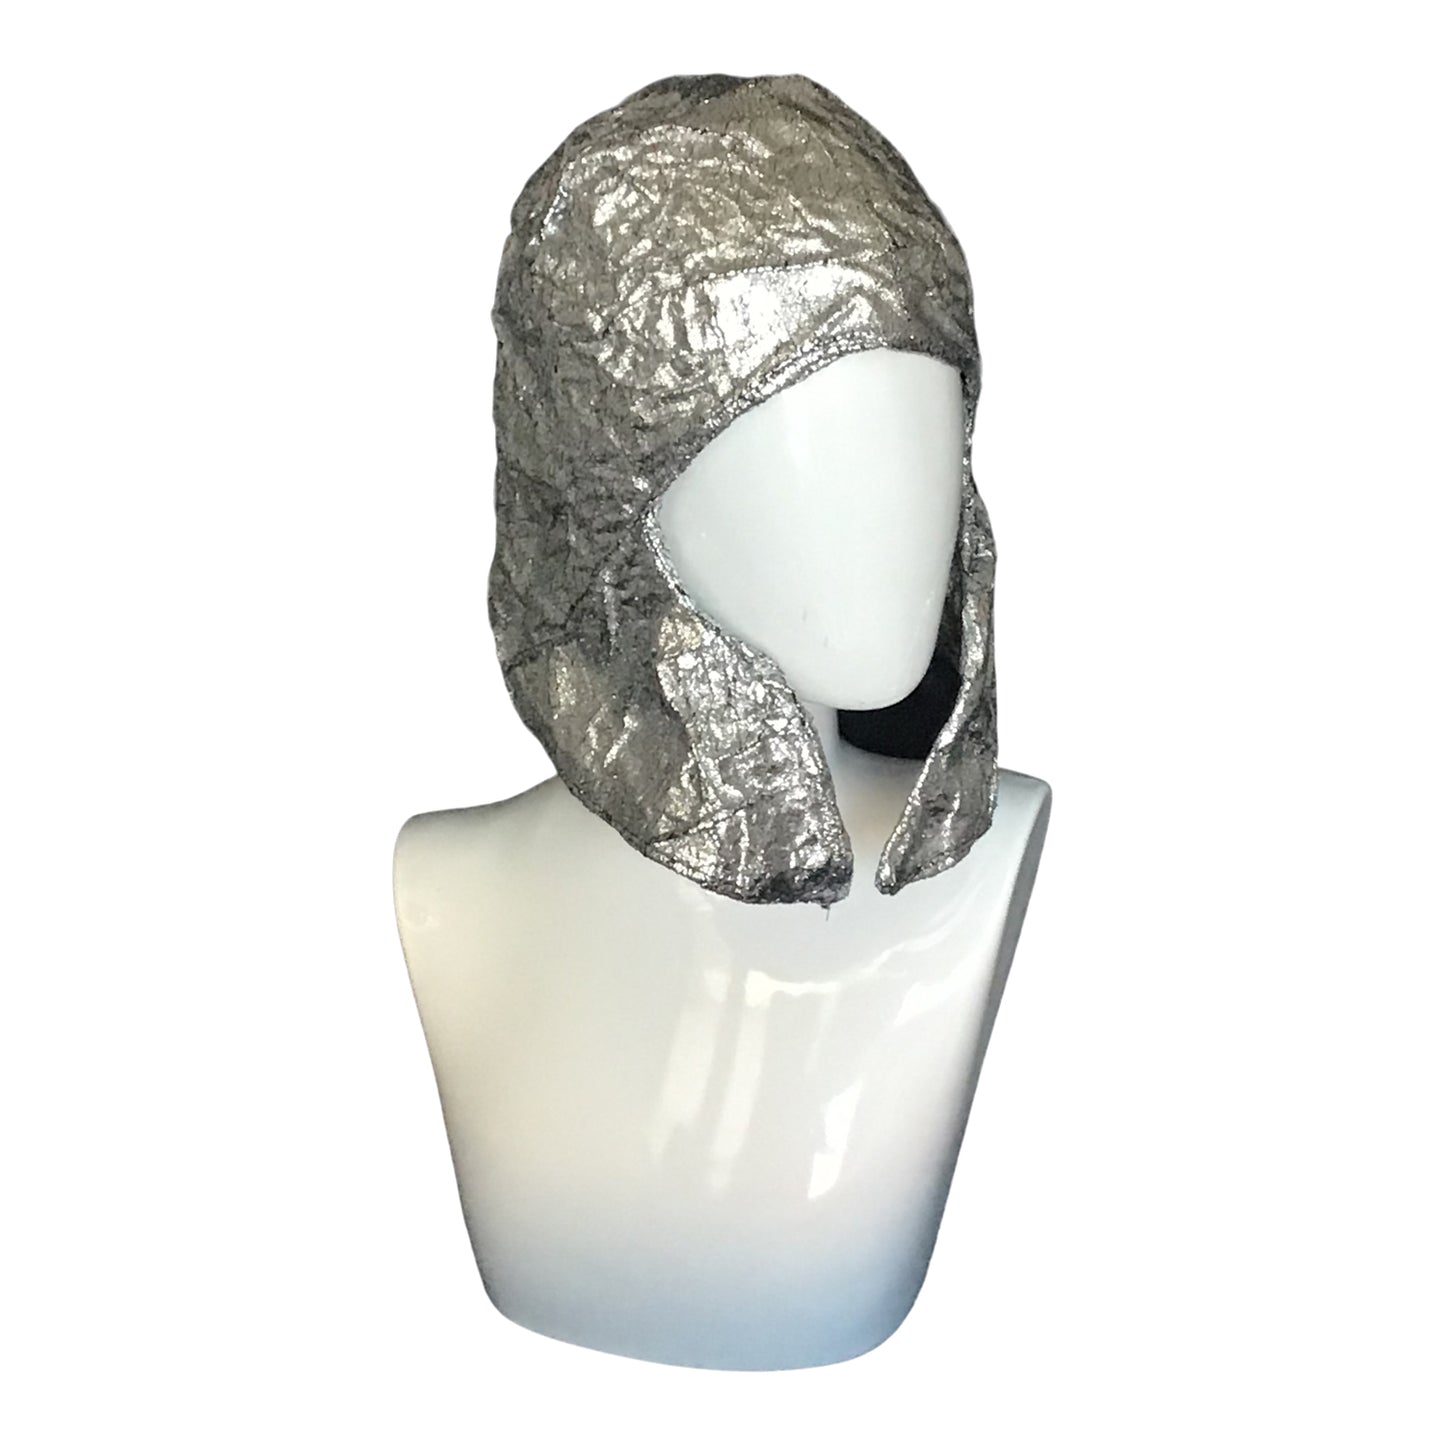 Morphy silver metallic helmet